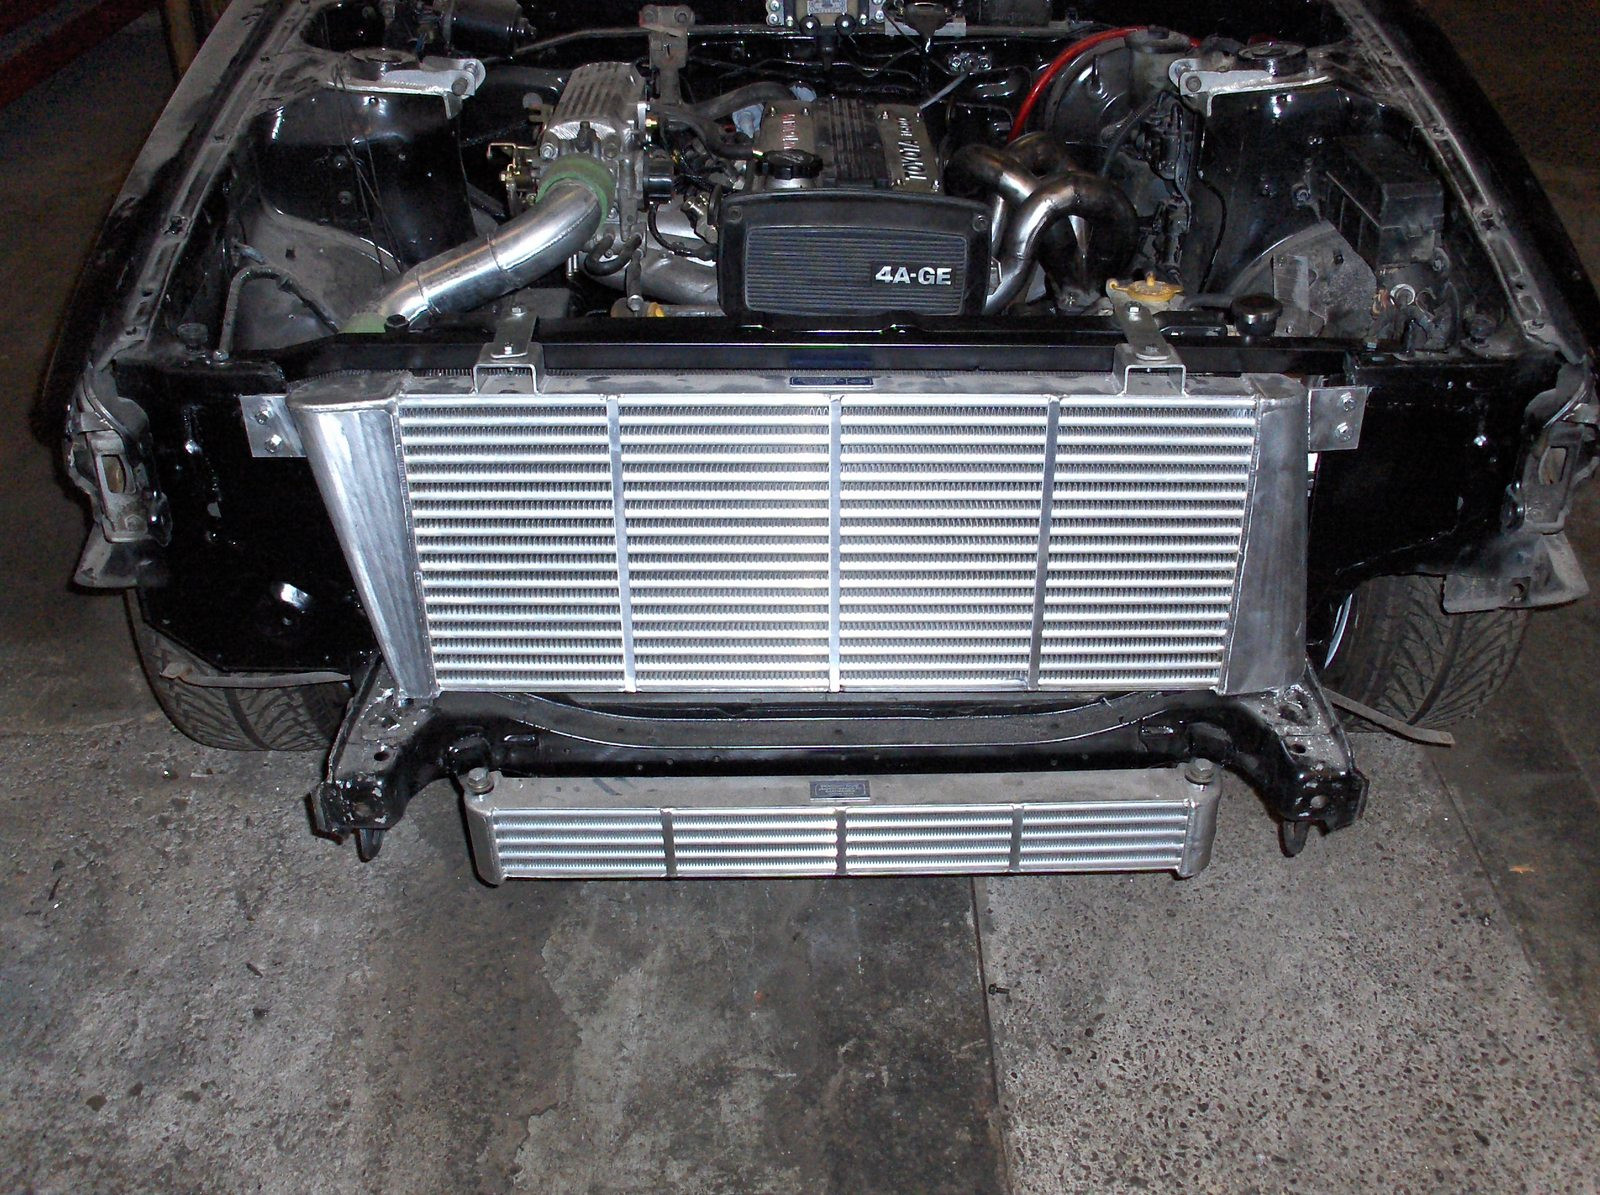 Toyota Corolla GT AE86 Turbo projekti, Valijaahdytin ja oljynjaahdytin tayttavat keulan